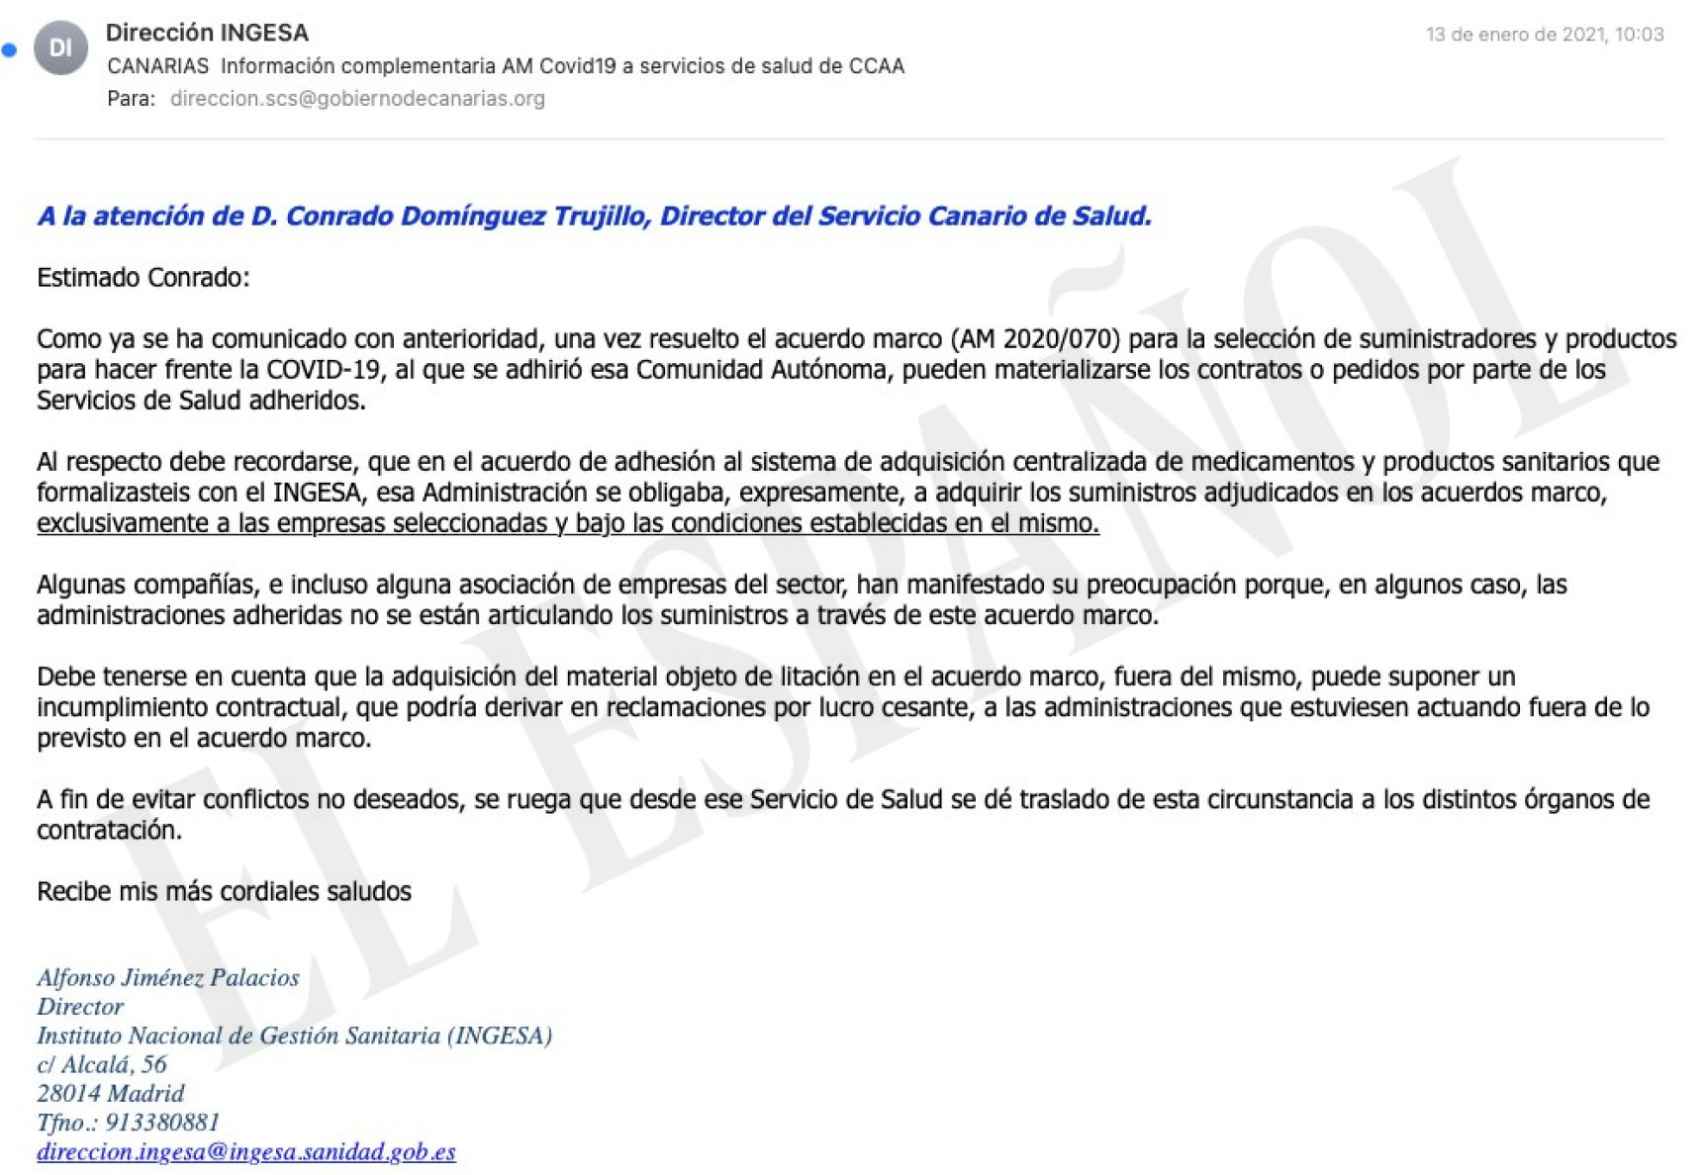 Email del director de INGESA a Conrado Domínguez del Servicio Canario de la Salud